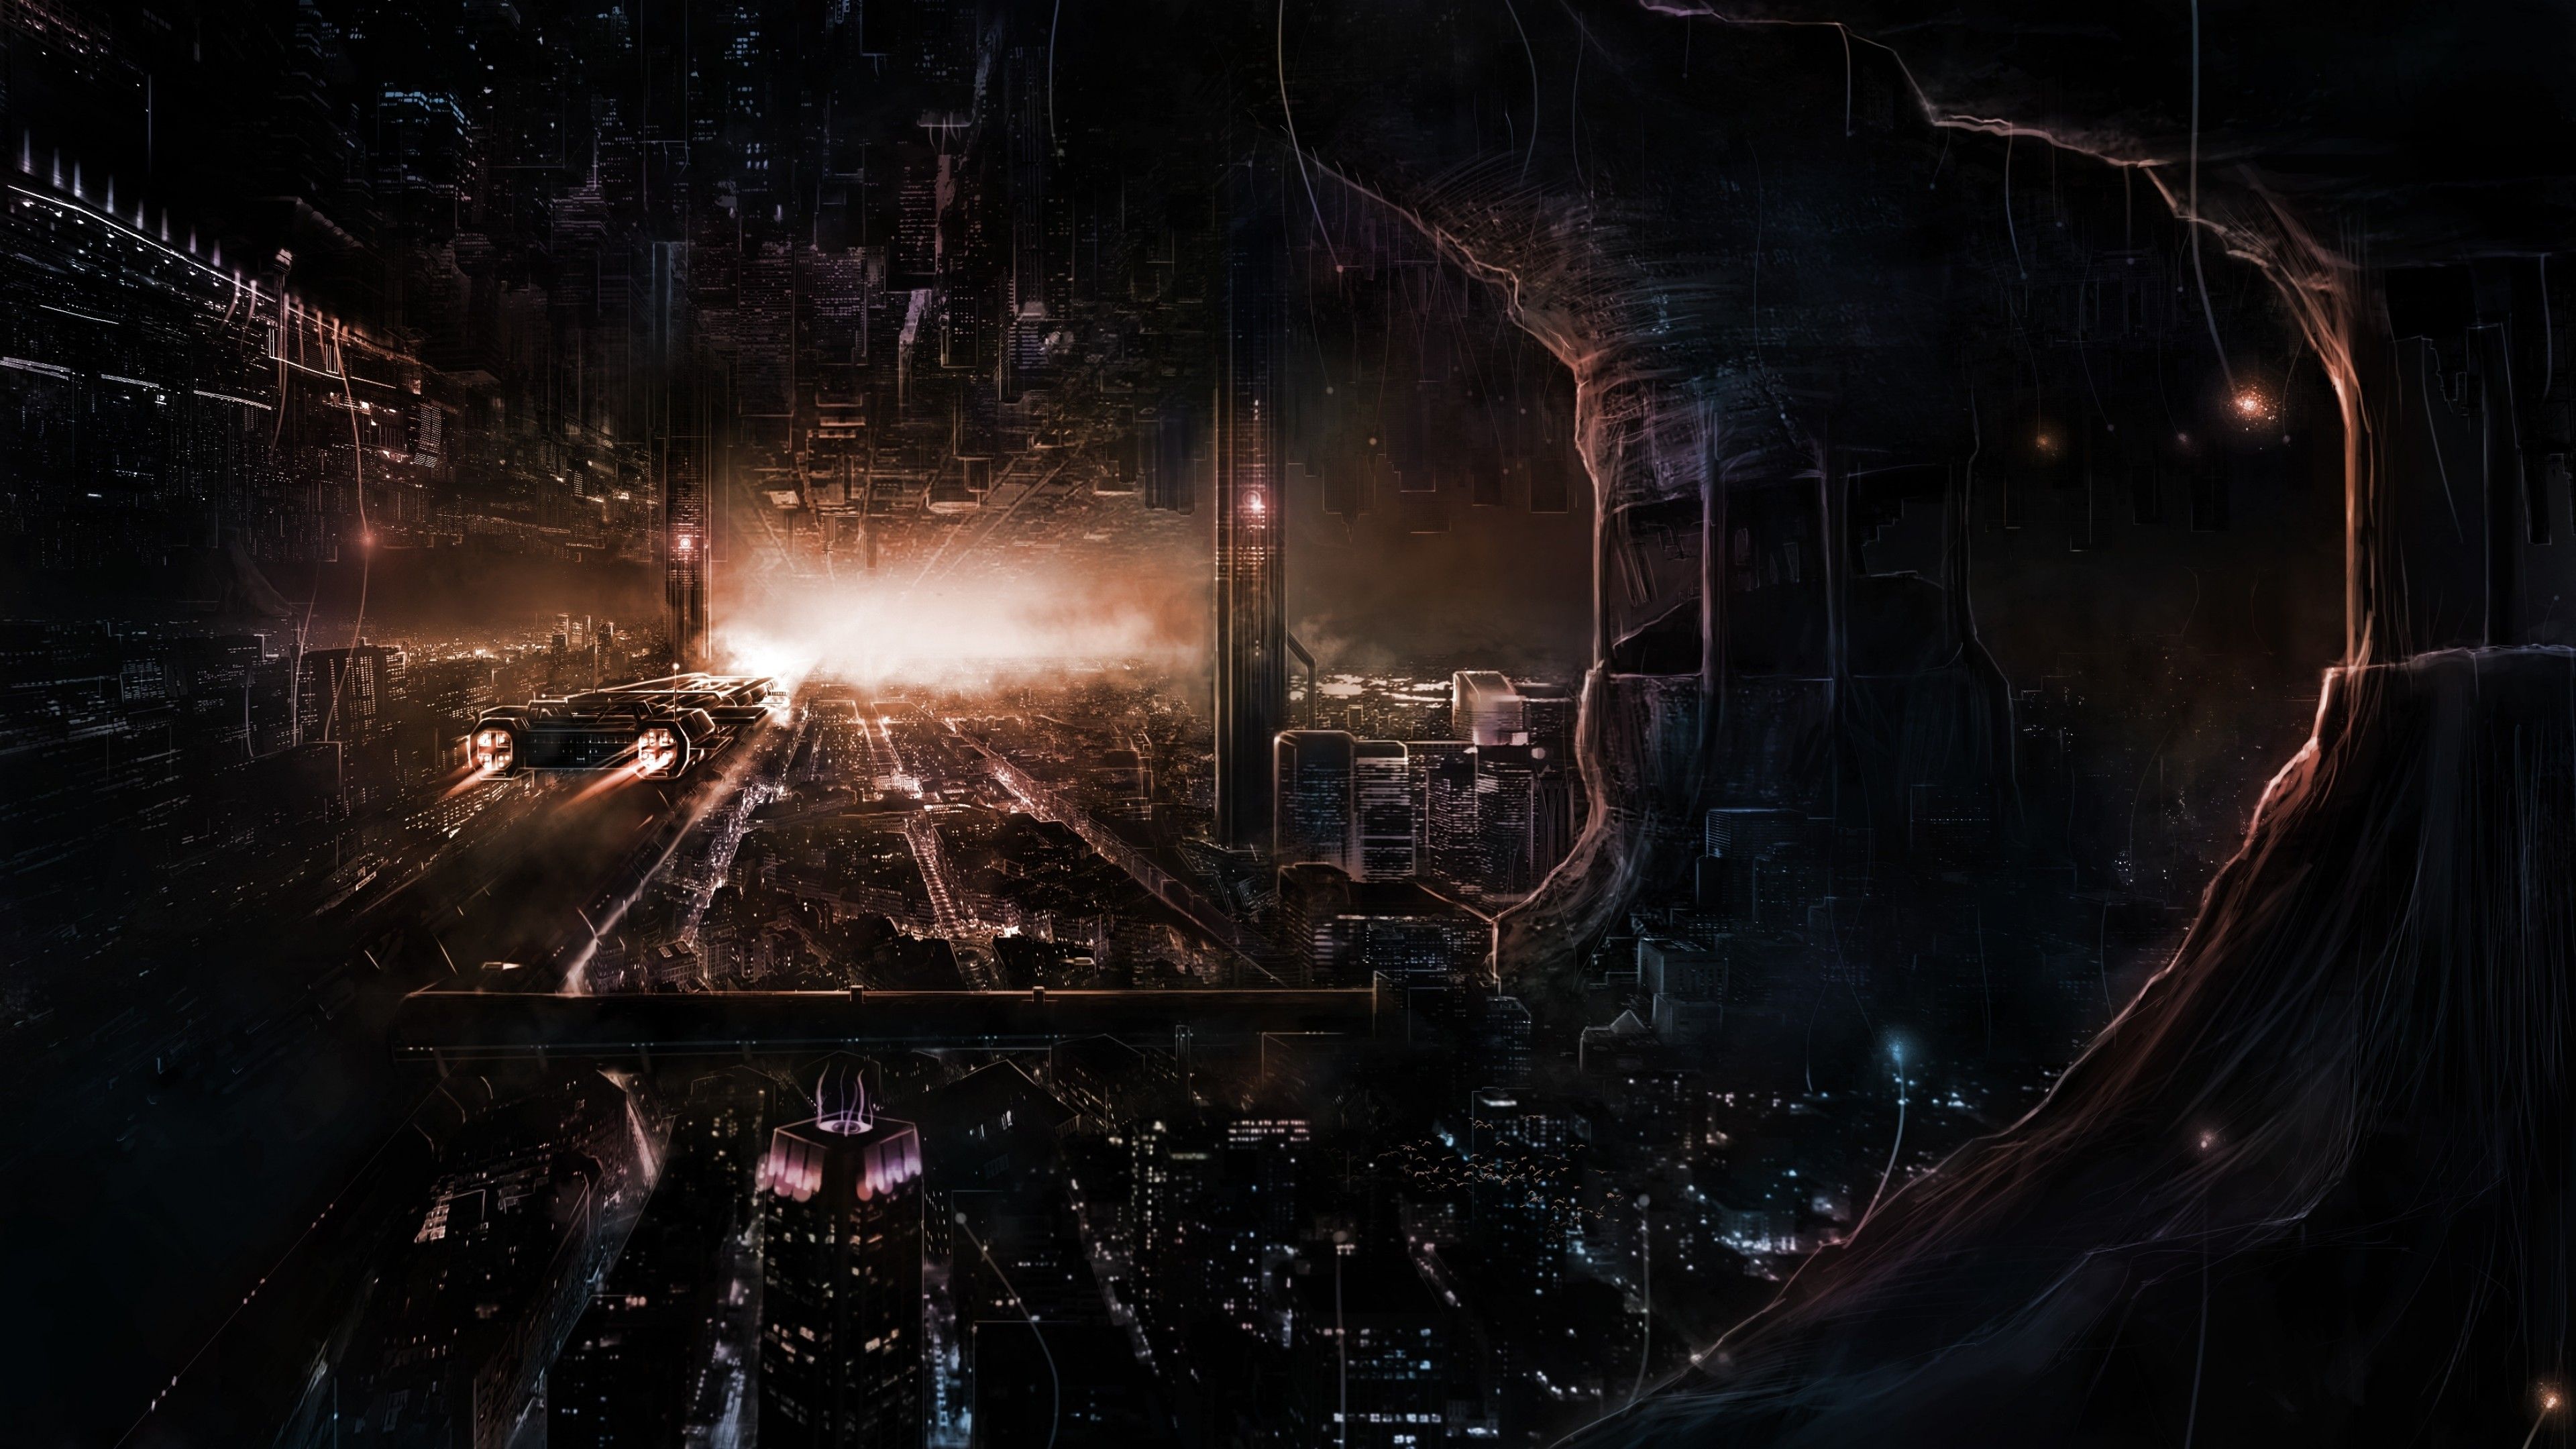 Download 3840x2160 Sci Fi, Futuristic City, Dark Theme Wallpaper For UHD TV